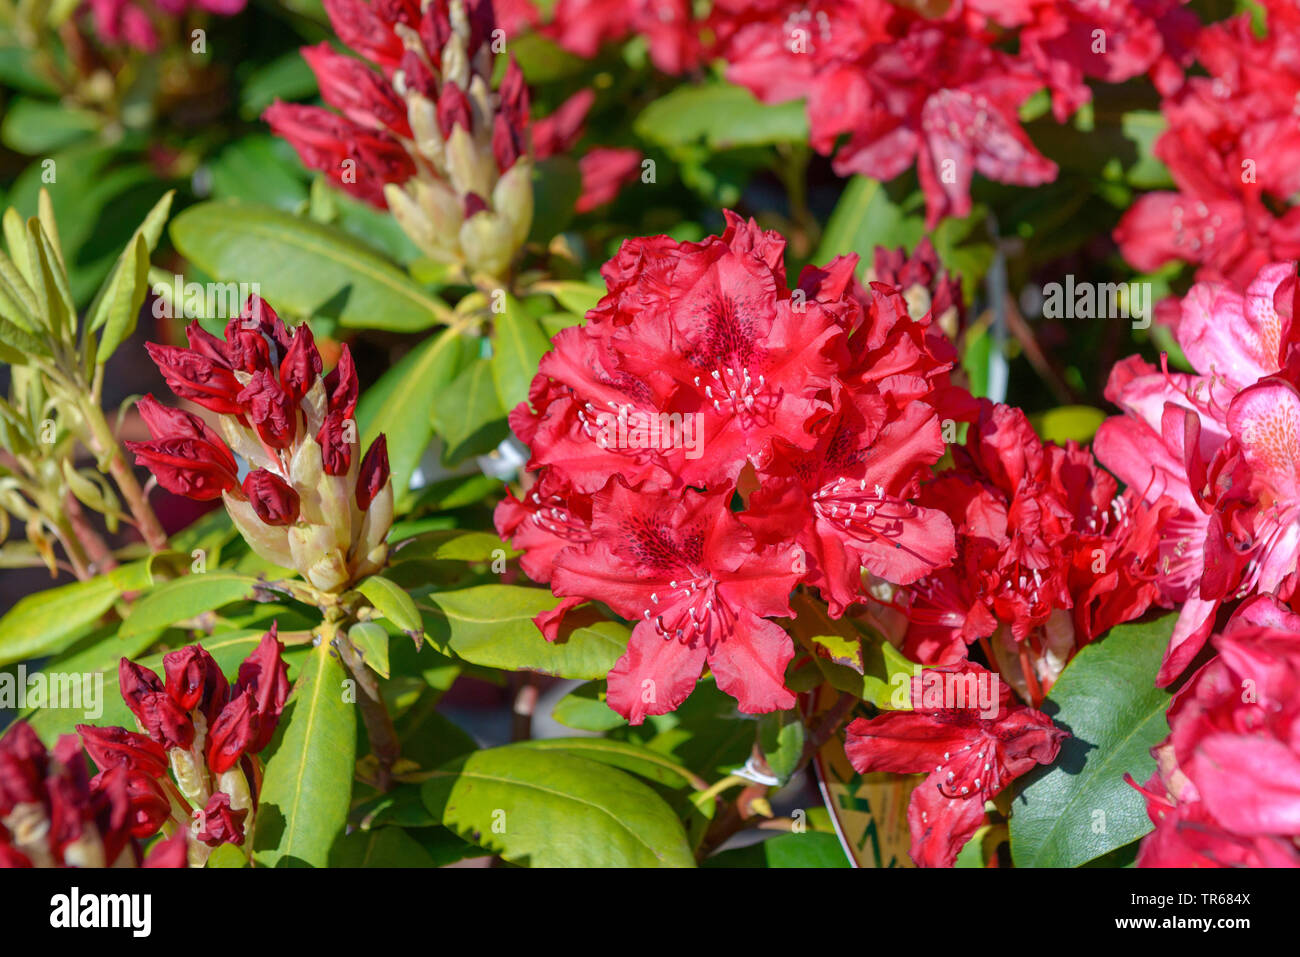 rhododendron (Rhododendron Feuerschein), blooming, cultivar Feuerschein Stock Photo